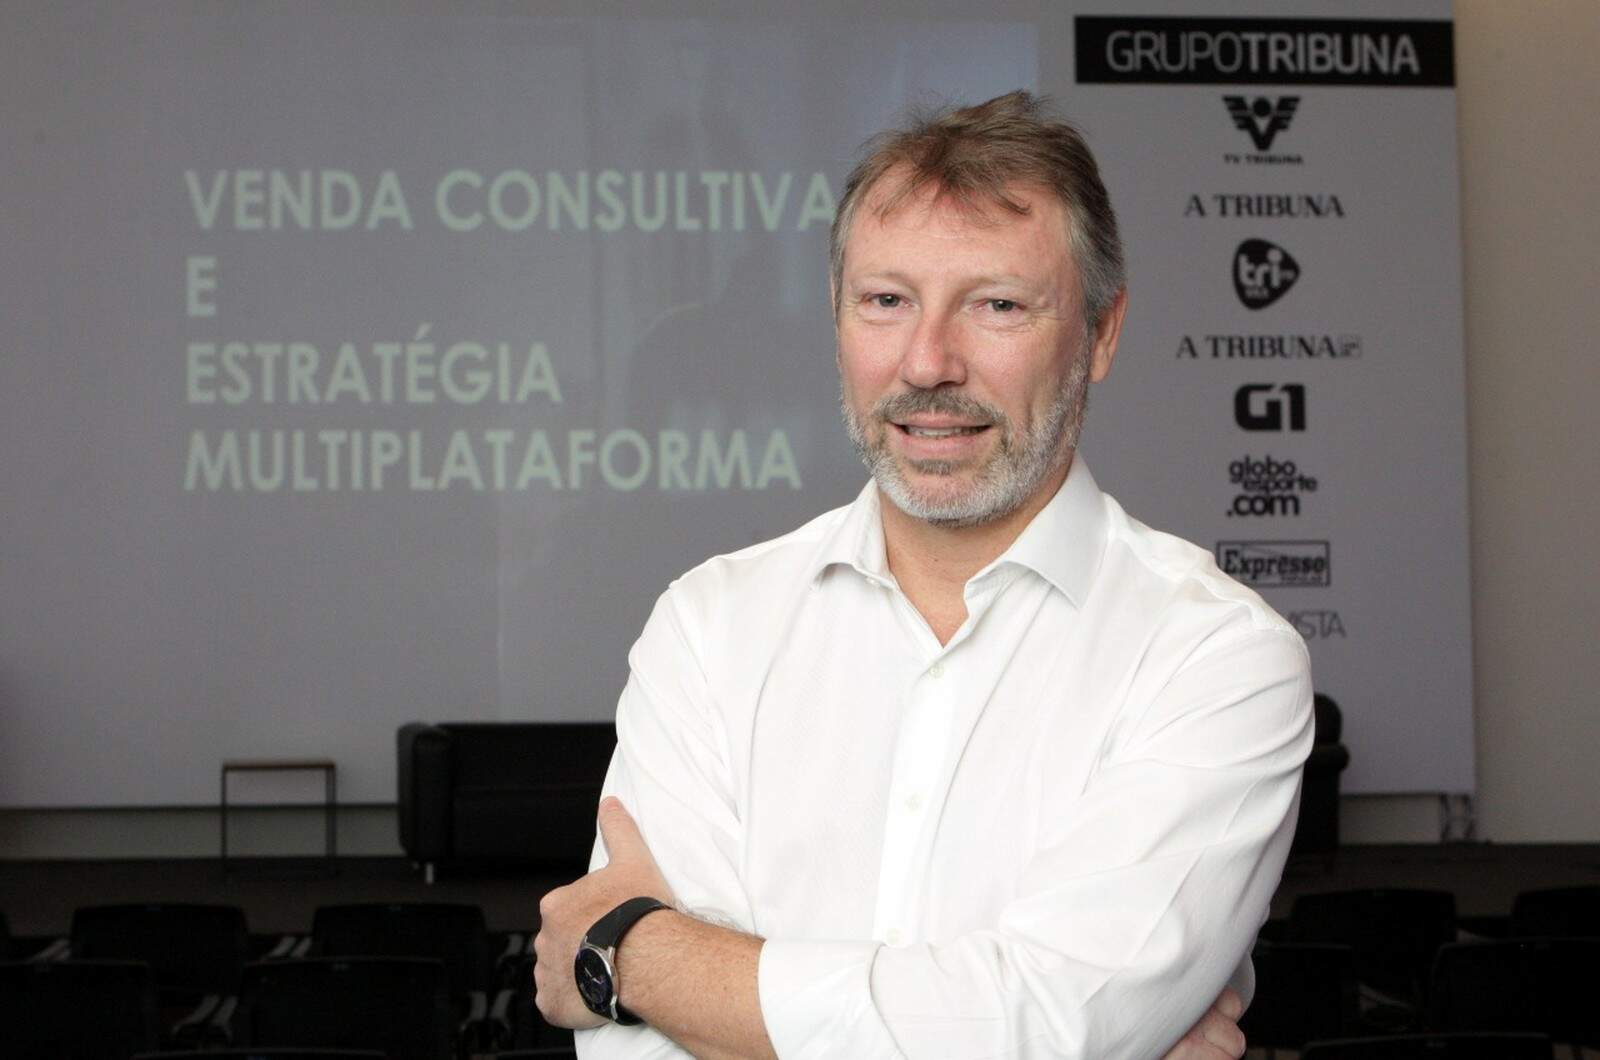 Consultor Flávio Steiner conversou sobre estratégias de marketing e vendas durante palestra